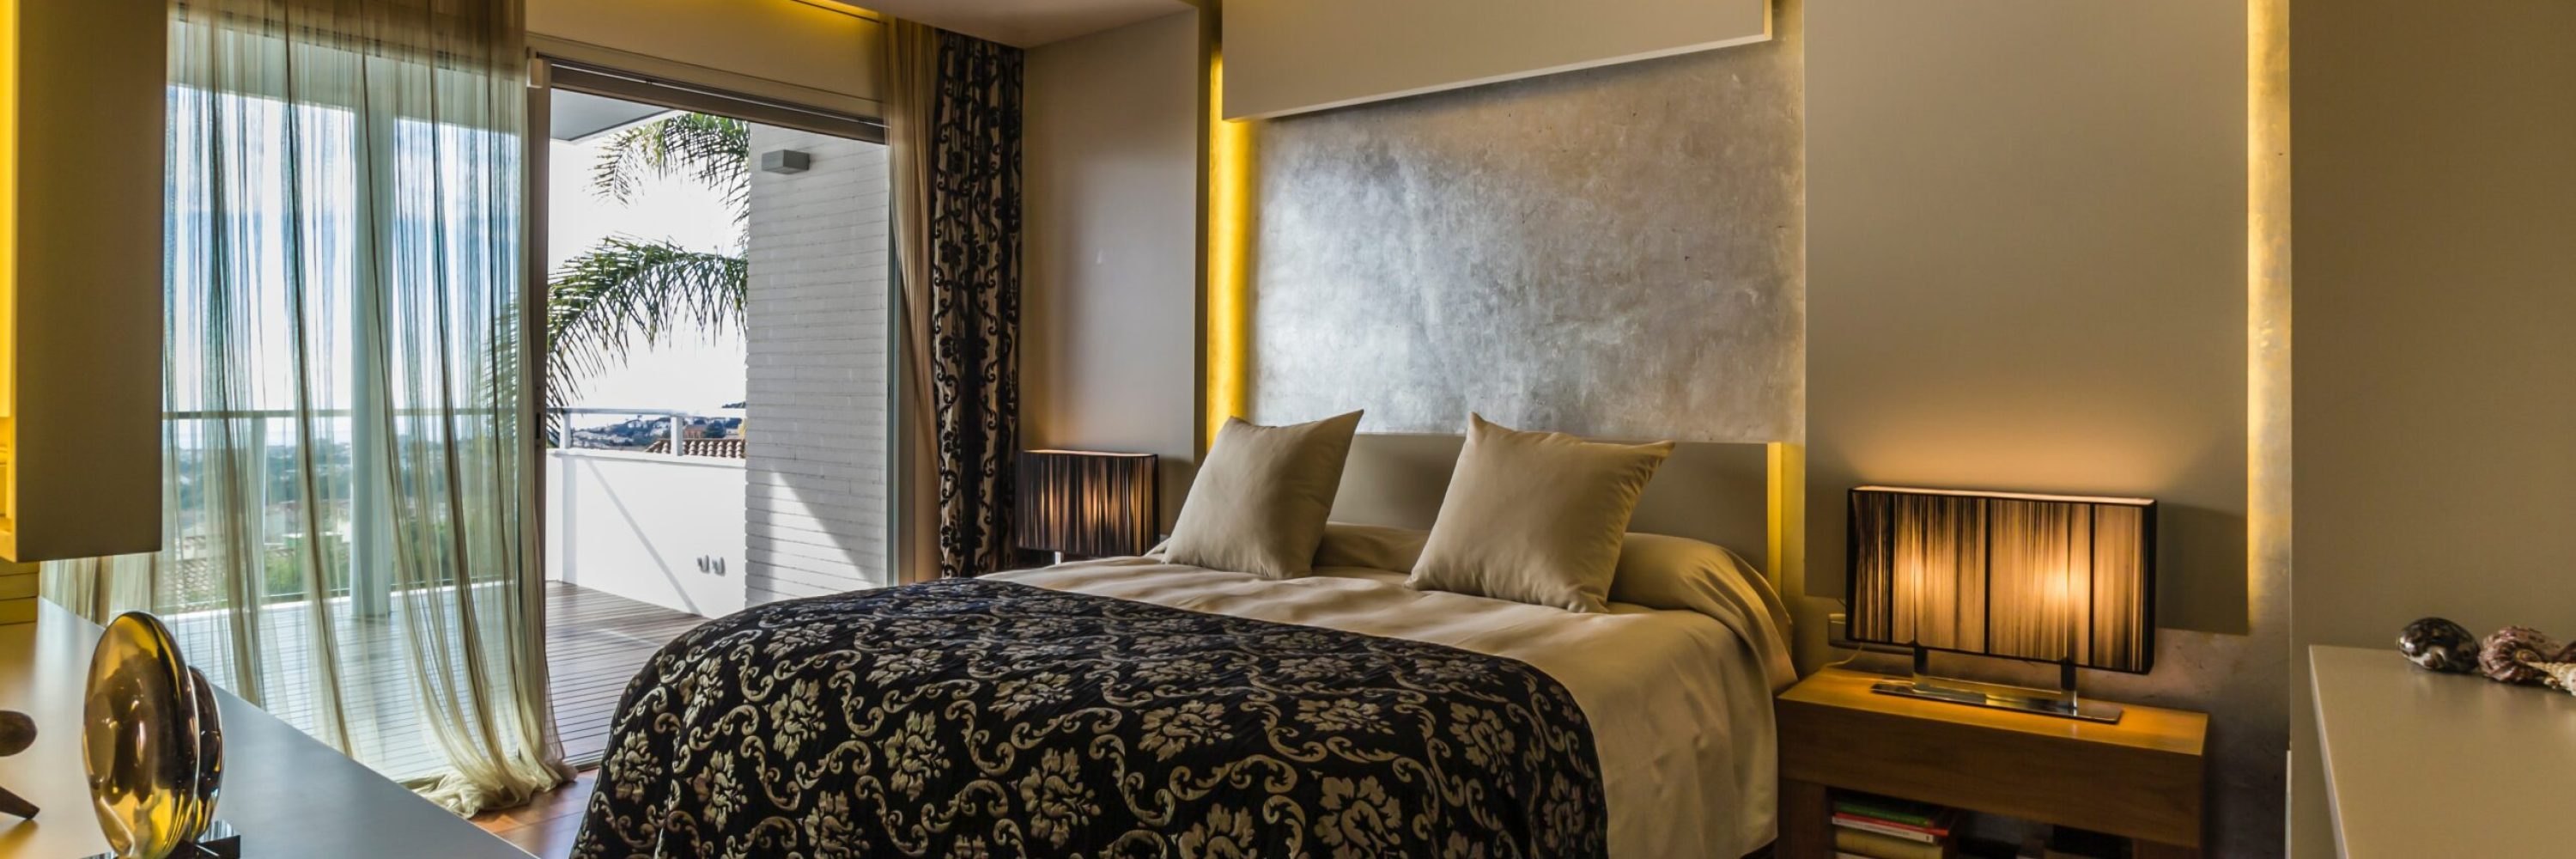 Fidelisation client optimisee grace a l hyperpersonnalisation en hotellerie de luxe